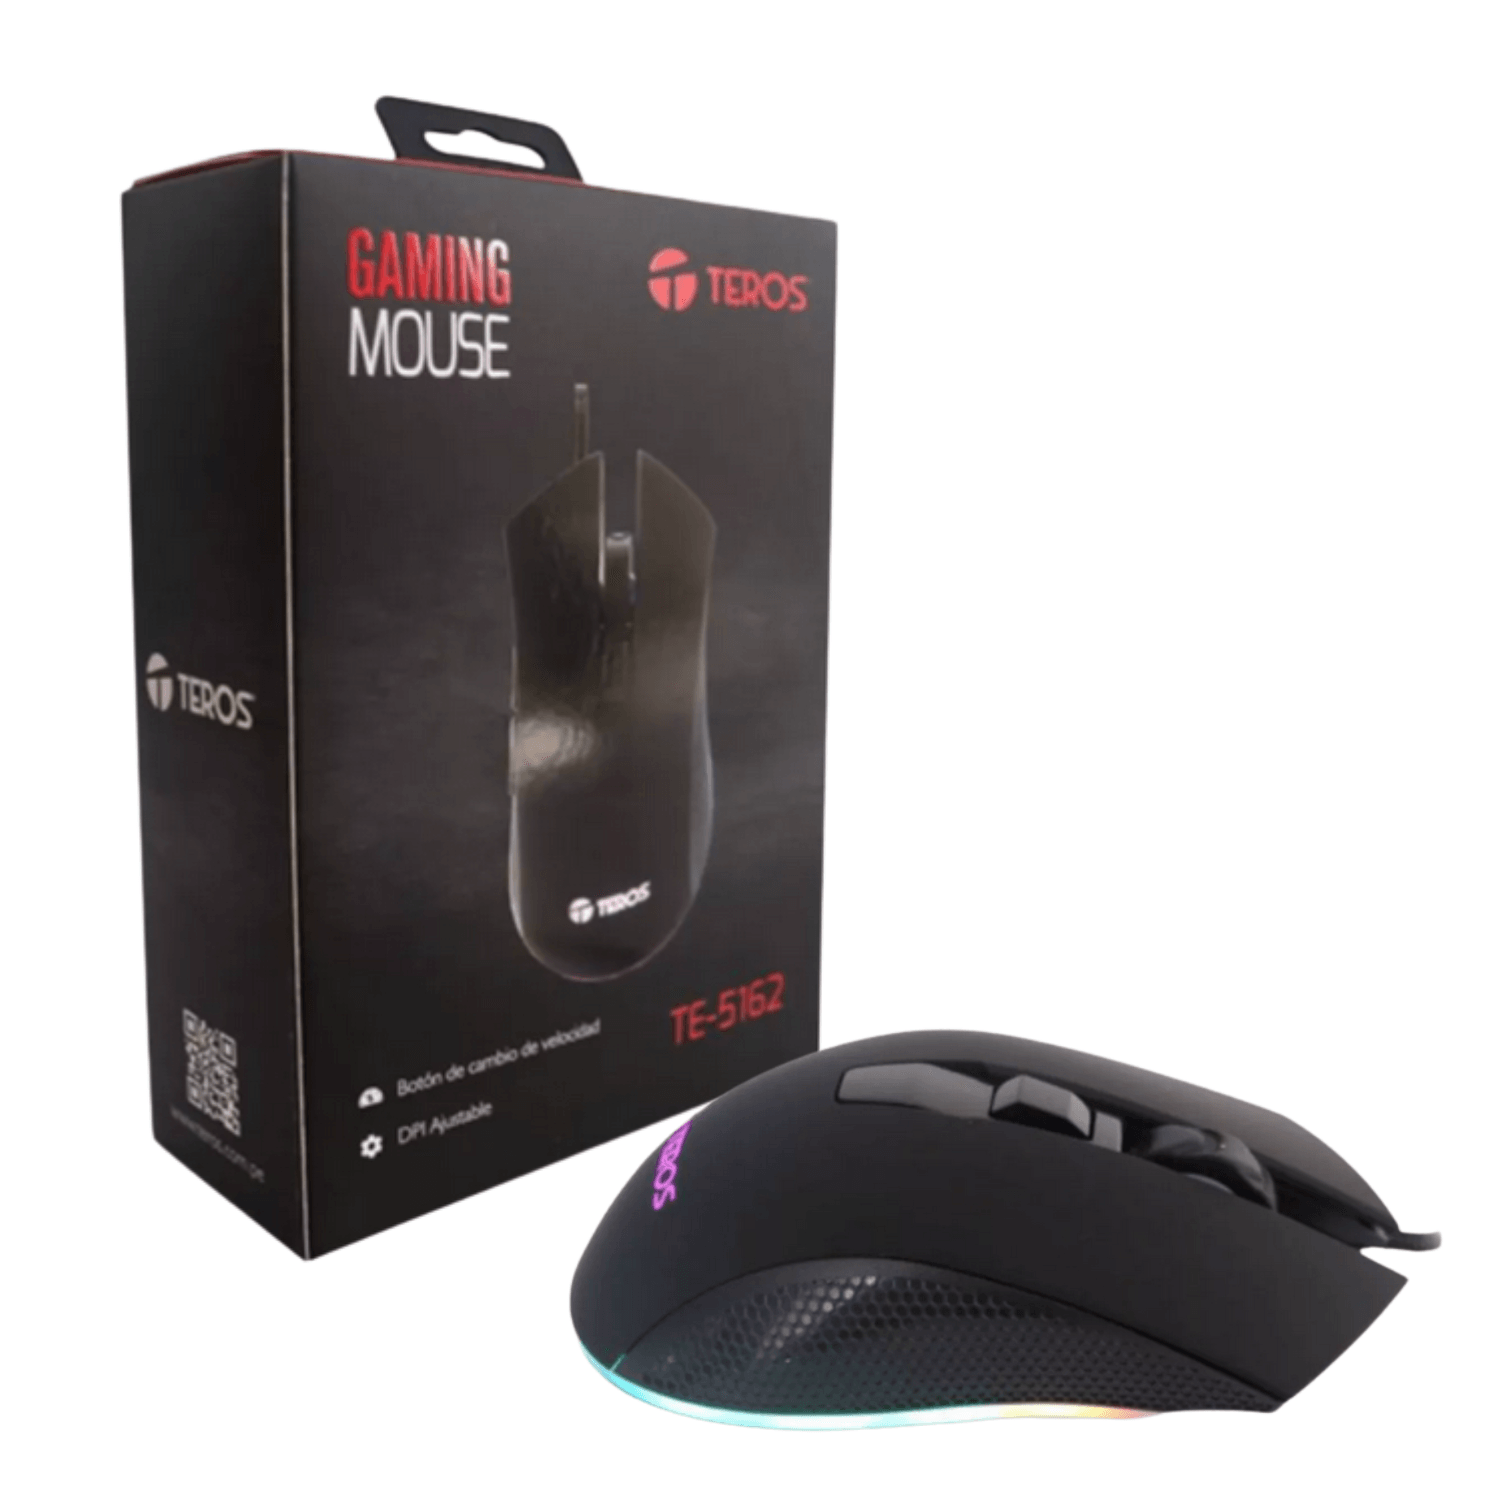 Mouse Gaming Teros Te-5162n, 6400dpi, Rgb, Usb, 6 Botones